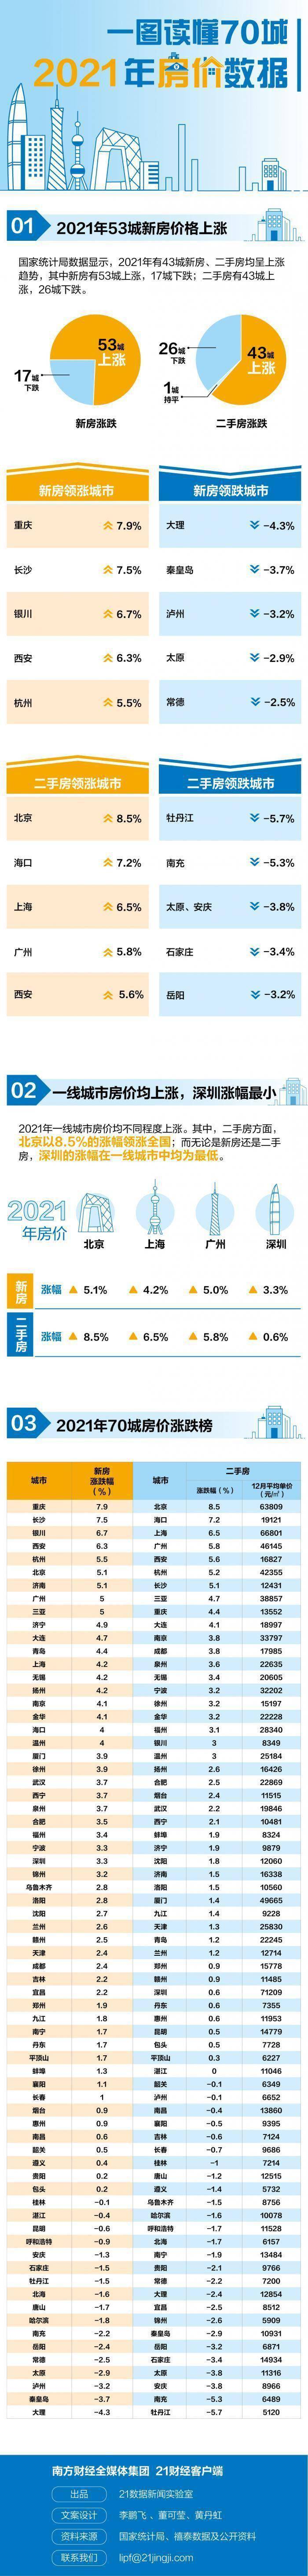 2021年房價漲幅榜出爐:北上廣進入二手房漲幅TOP5